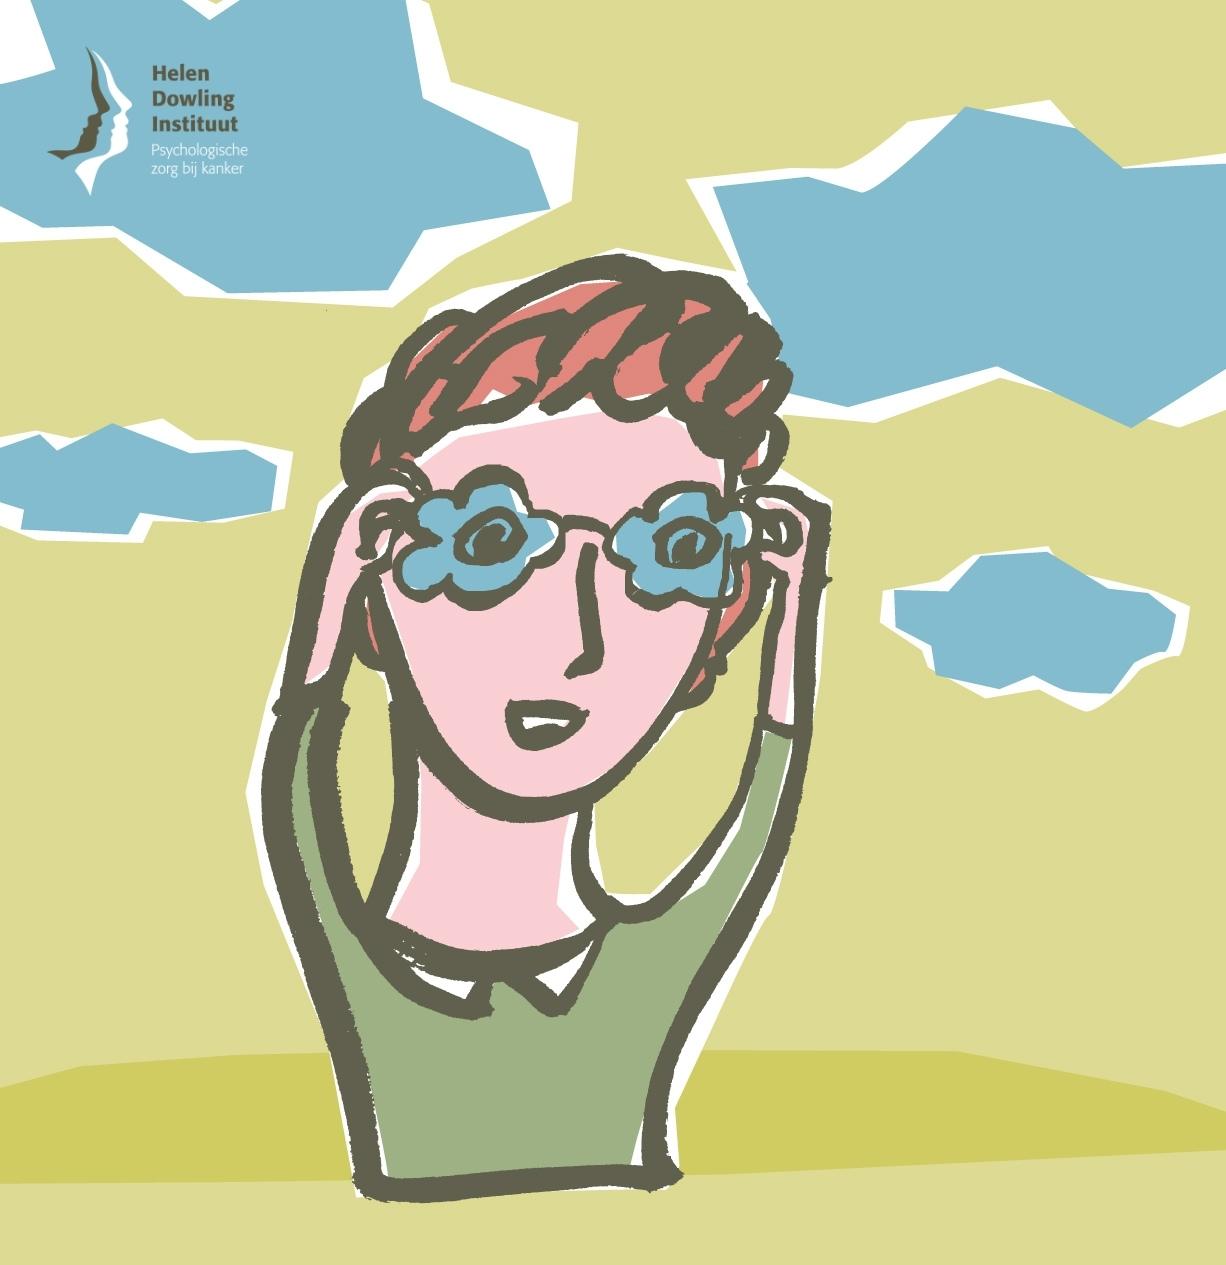 Illustratie bij het wetenschappelijk onderzoek SCHEMA van het Helen Dowling Instituut: een vrouw kijkt je nieuwsgierig aan door haar bloemetjesbril, terwijl ze de brilpootjes vasthoudt.